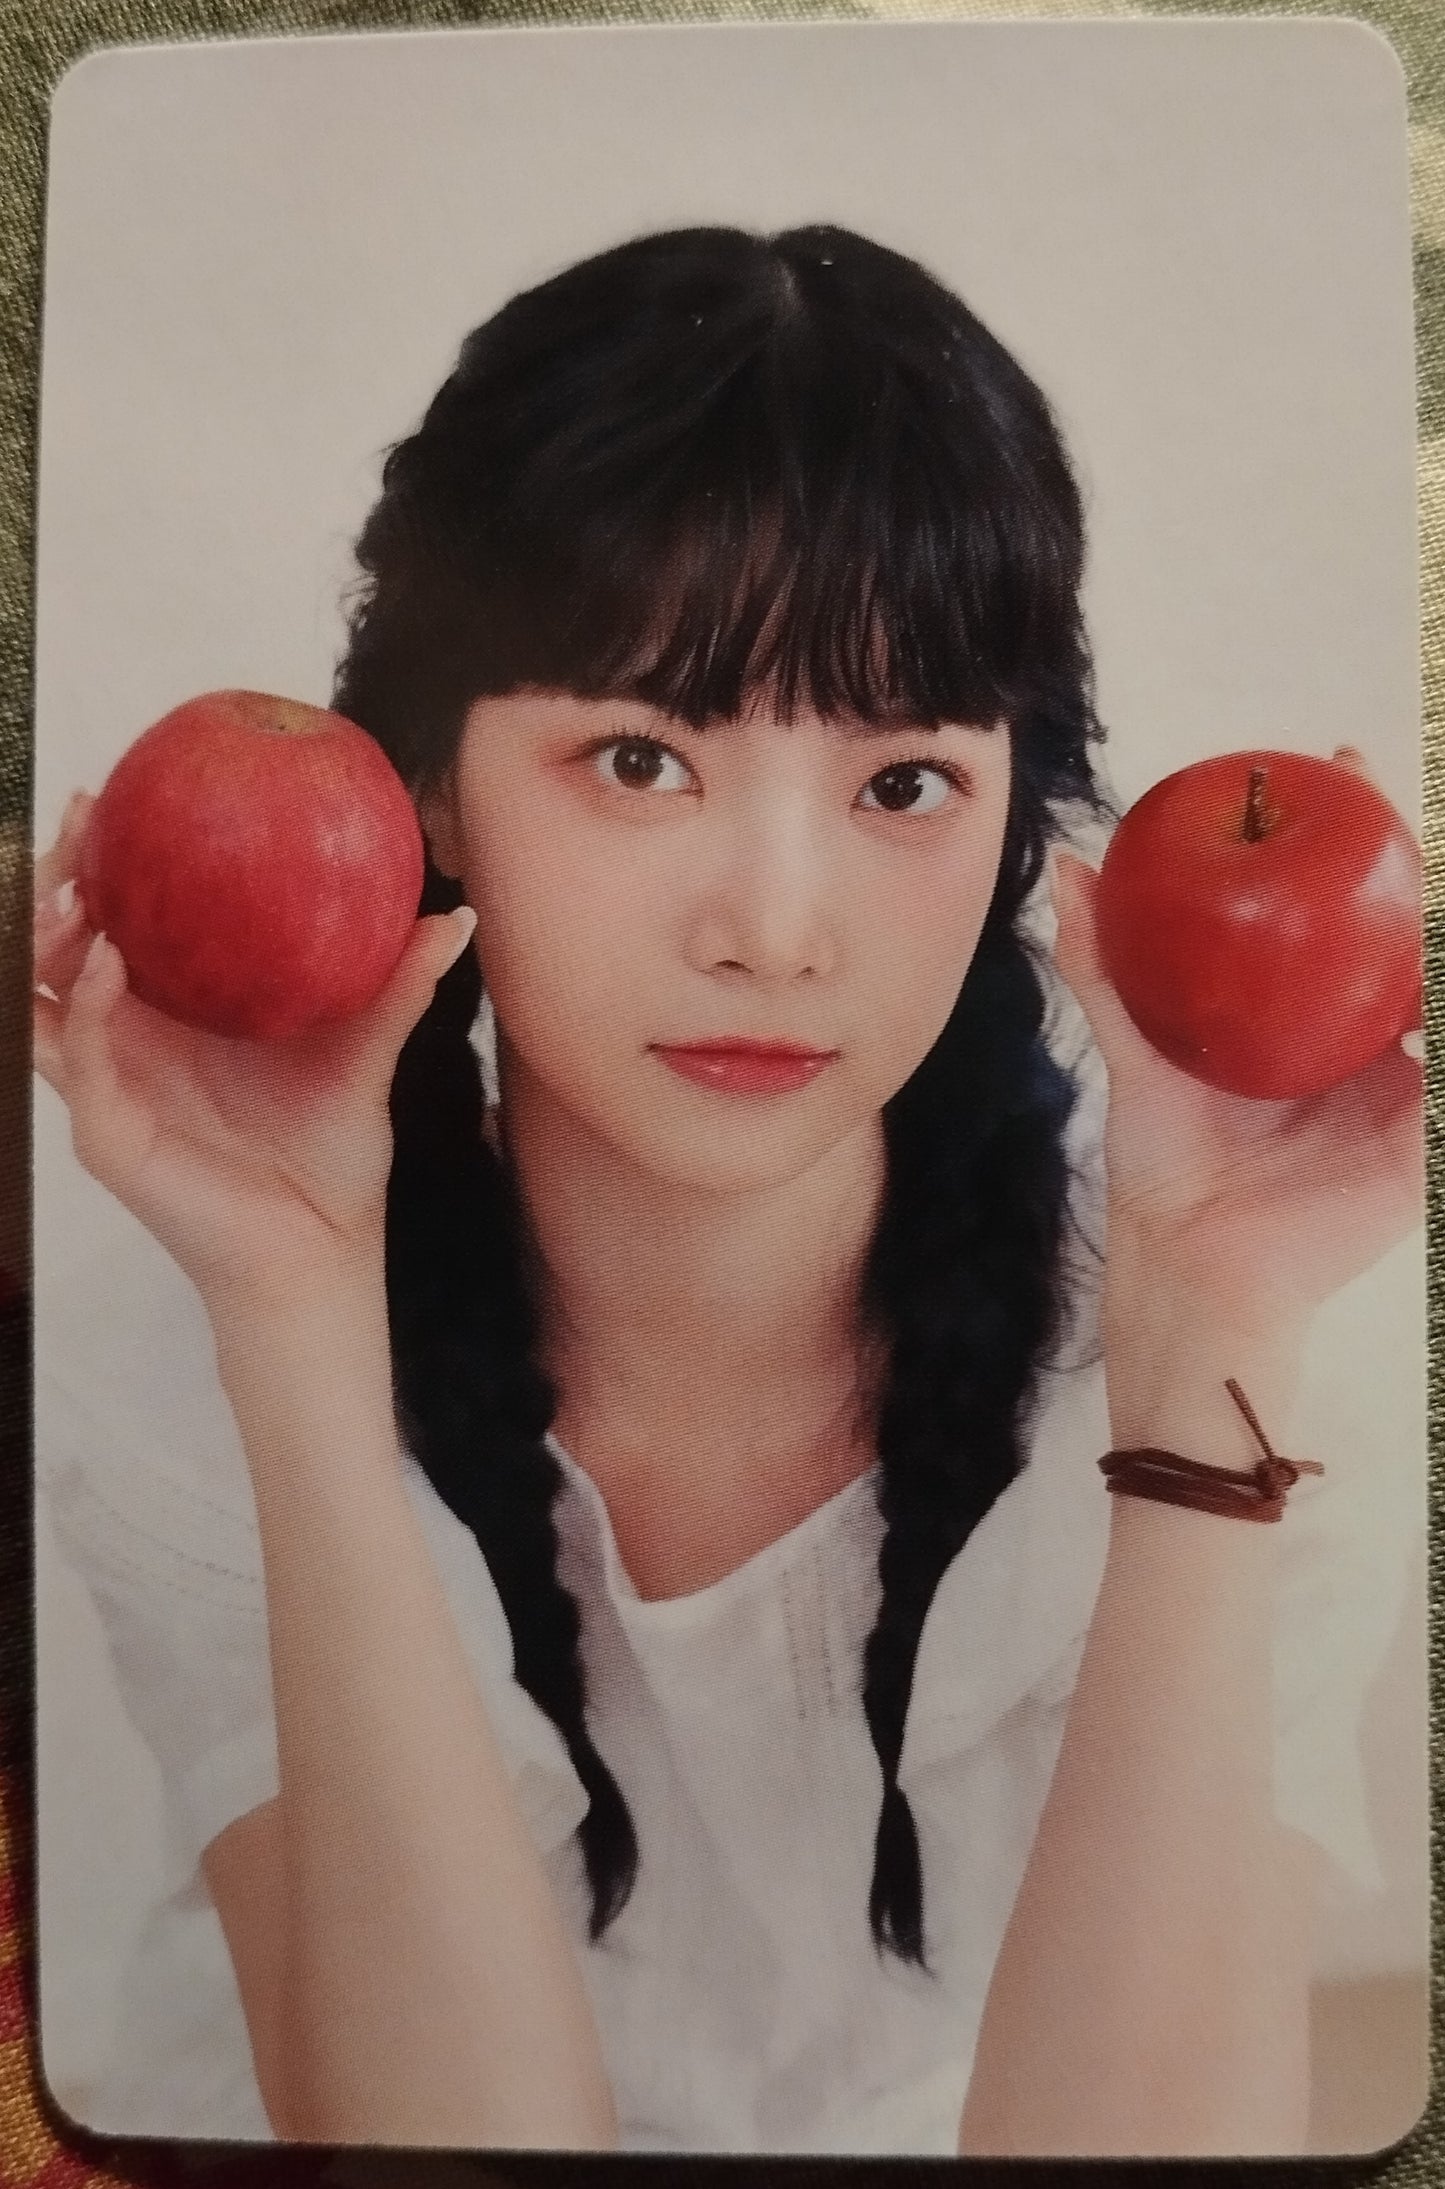 Photocard LE SSERAFIM Season's greetings Class of 2023 Eunchae